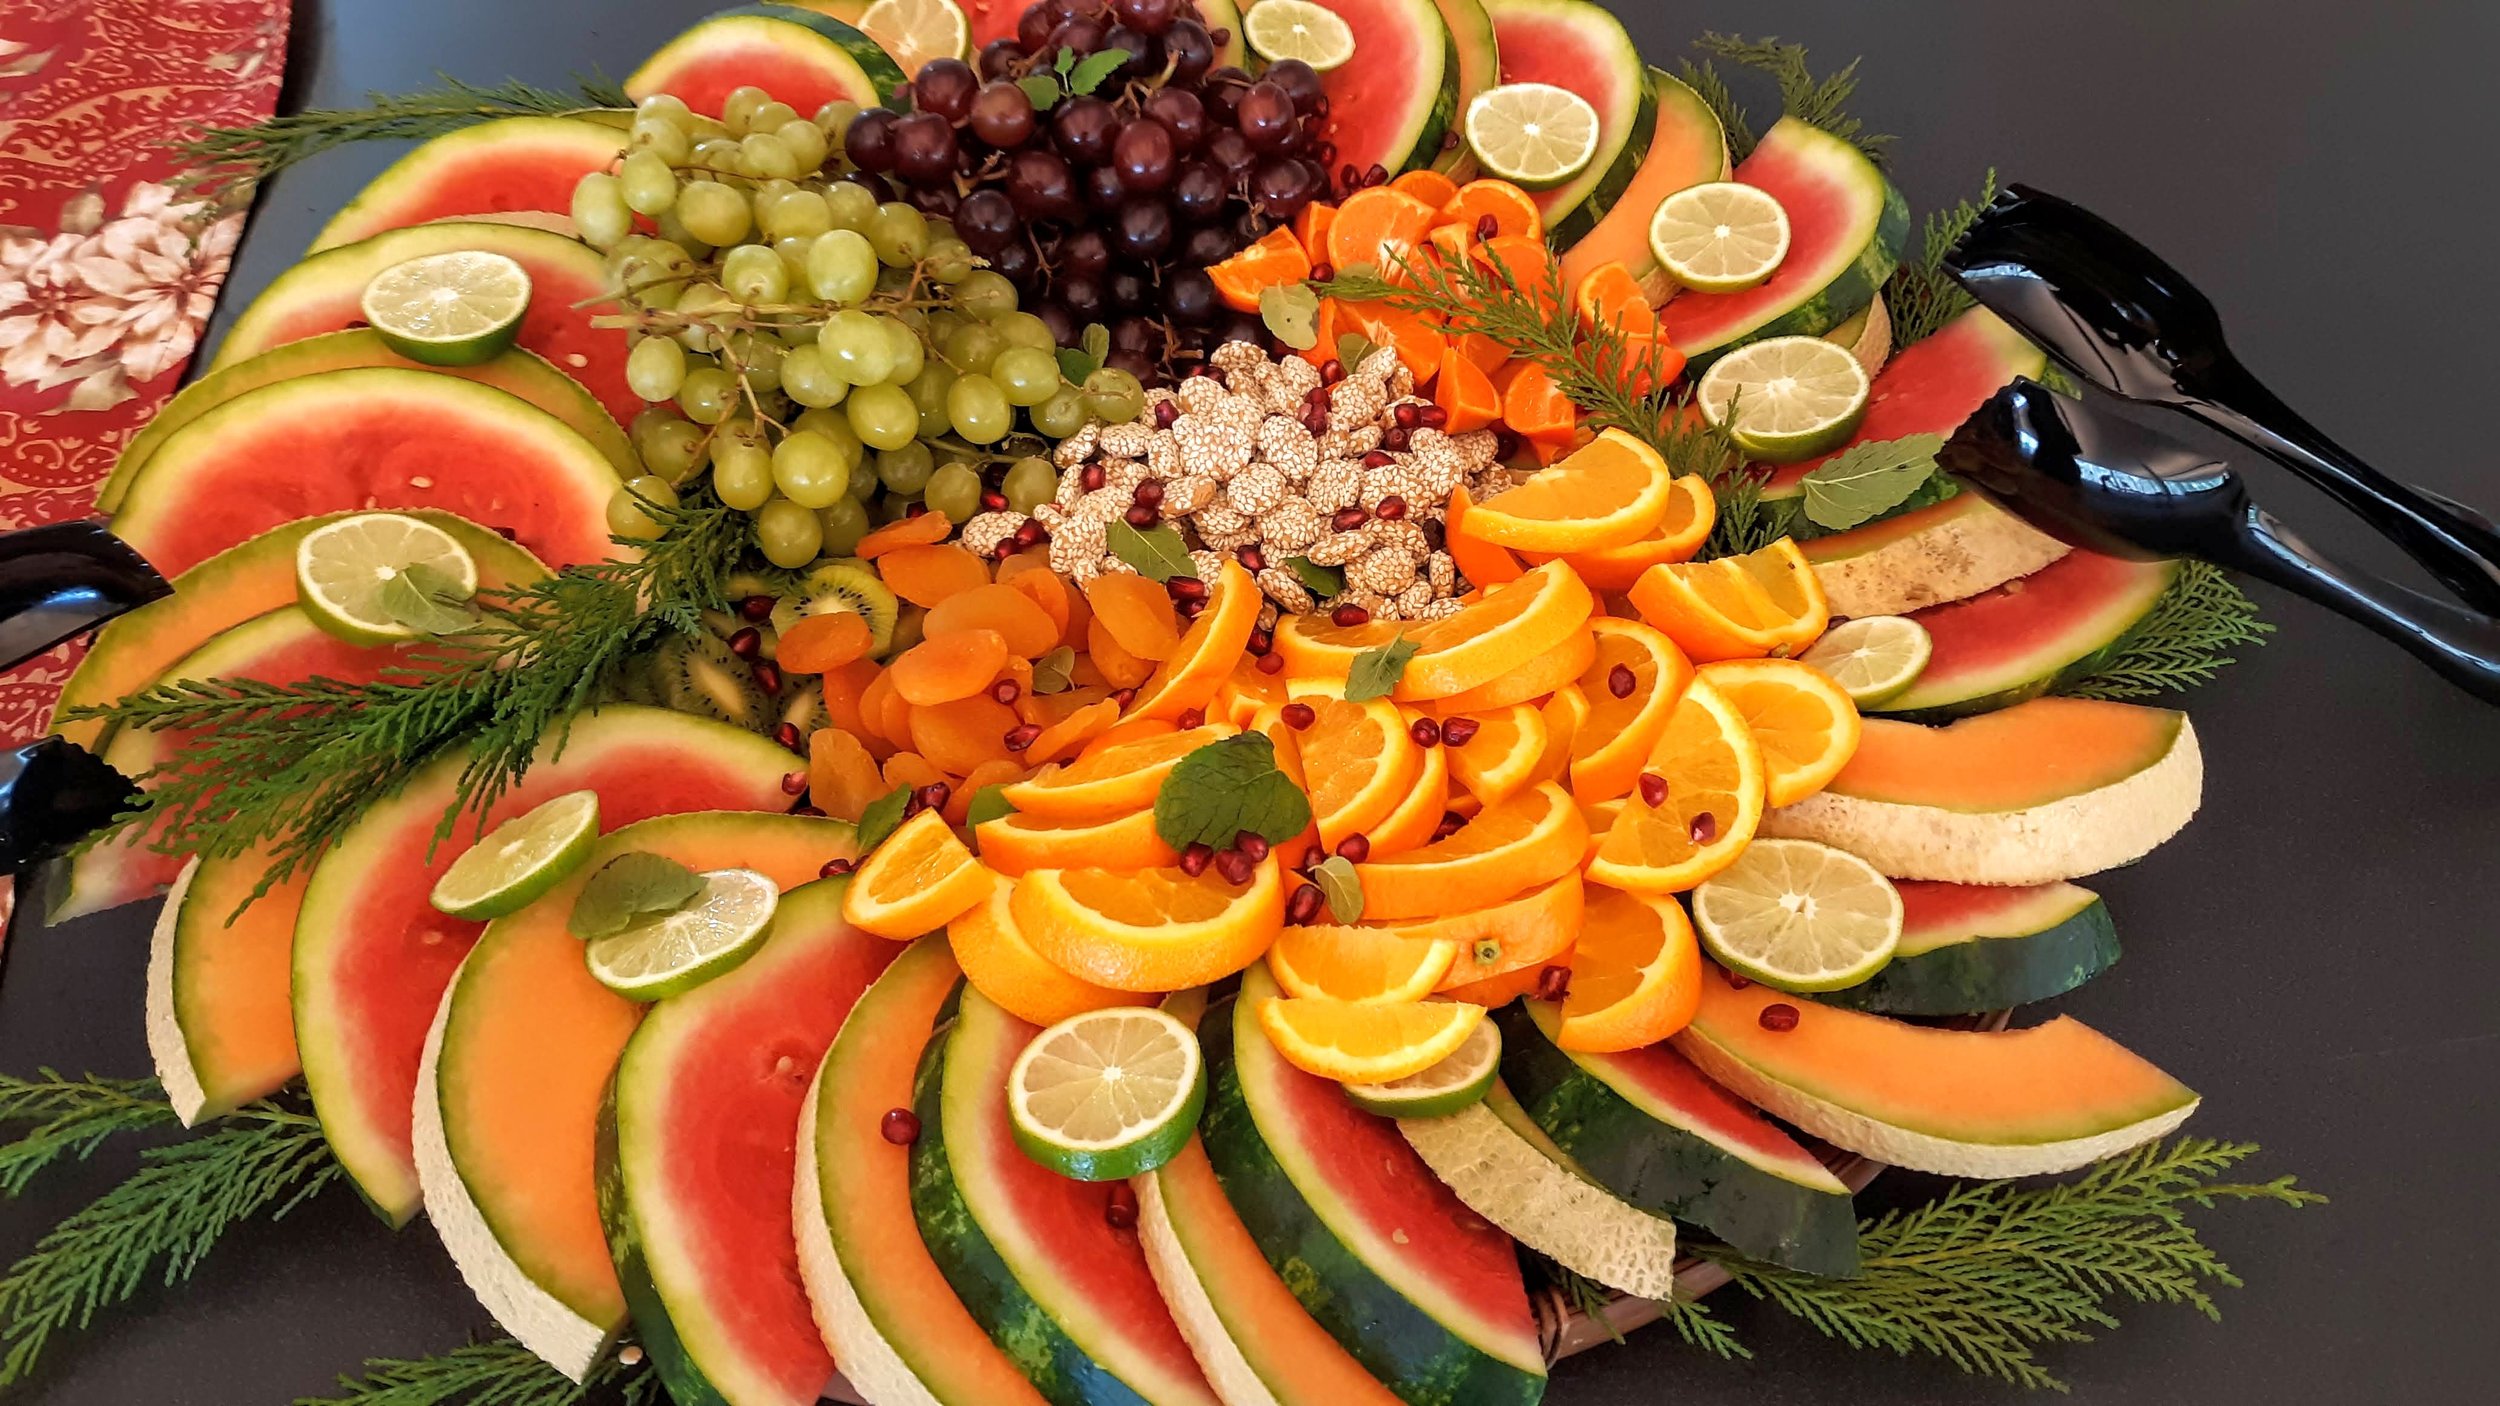 Lord Fruit platter.jpg